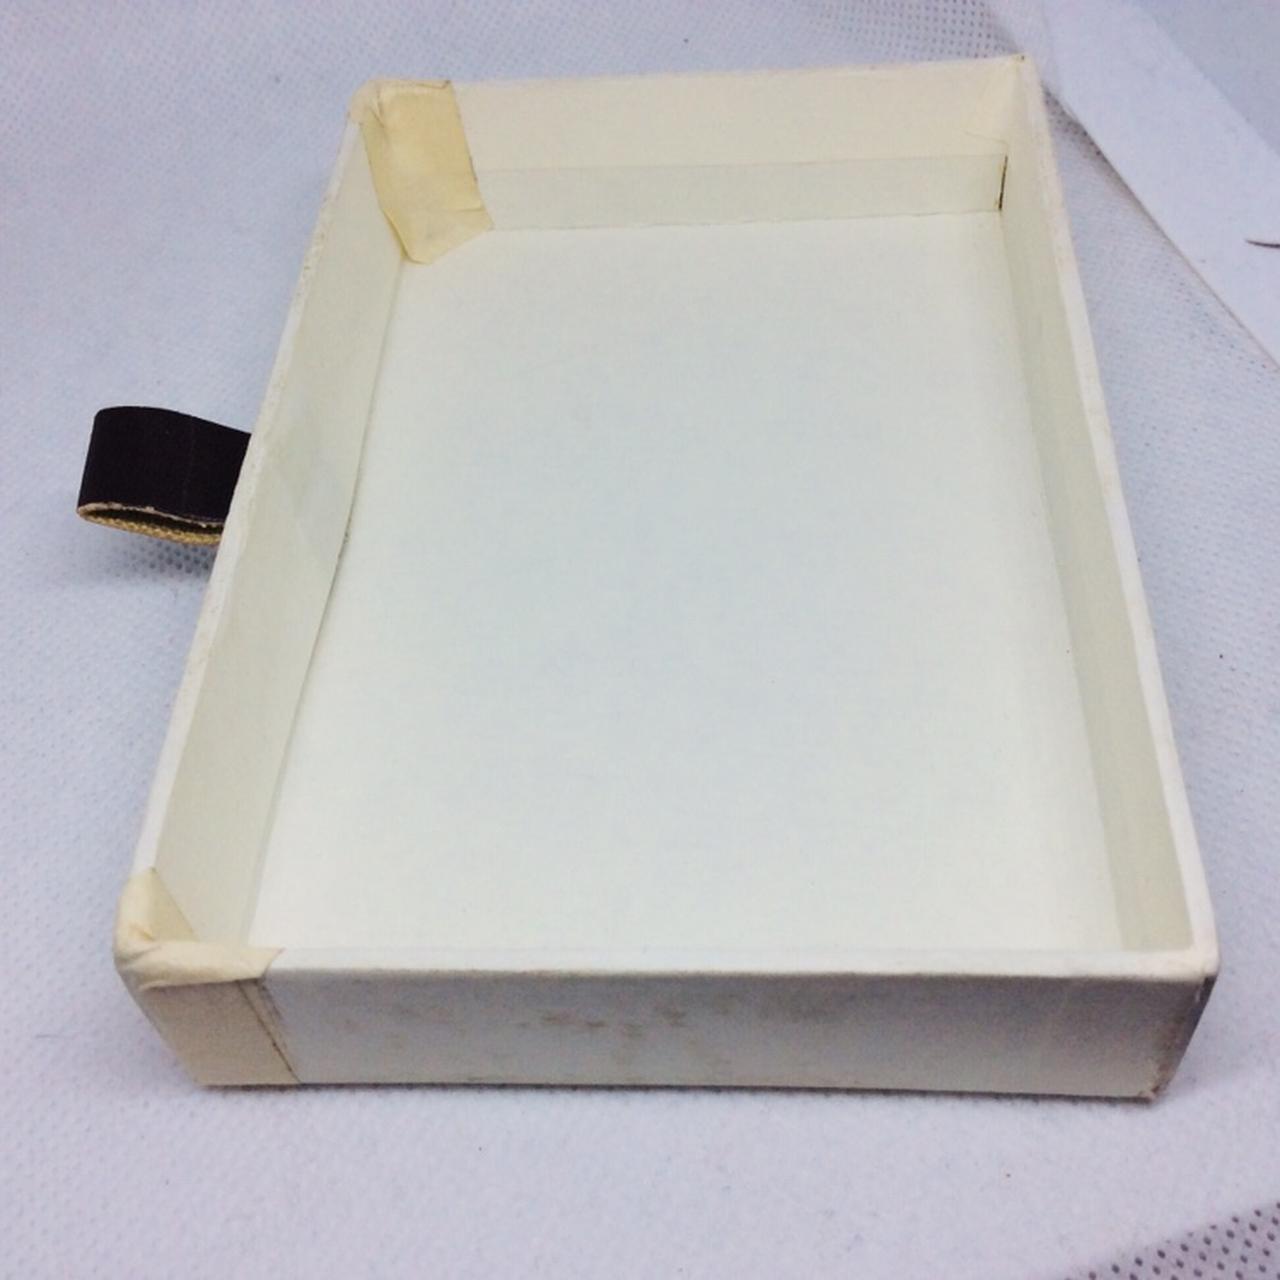 Louis Vuitton Box 14”W x 10 1/4”L x 4 3/4”T